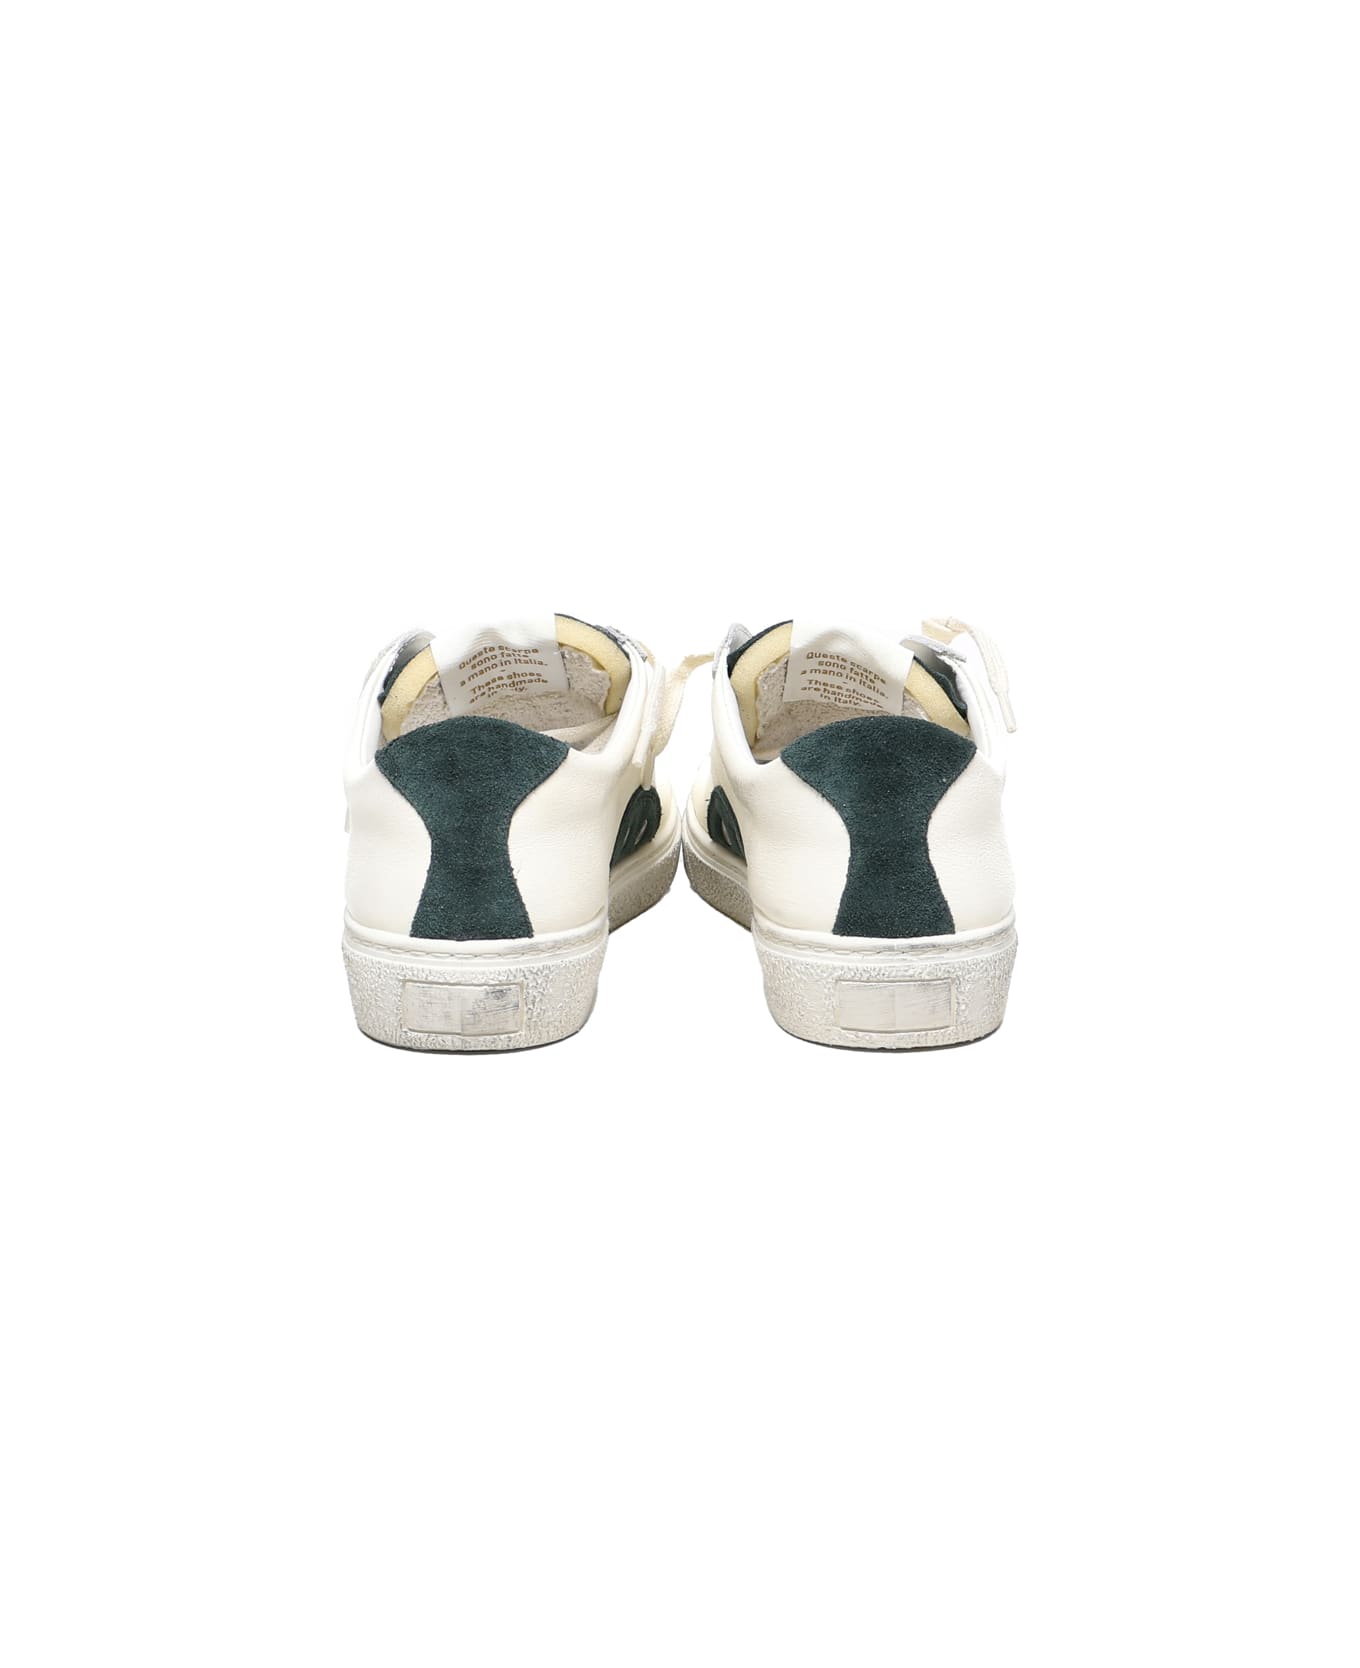 Valsport Ollie Goofy Sneakers - White, green スニーカー